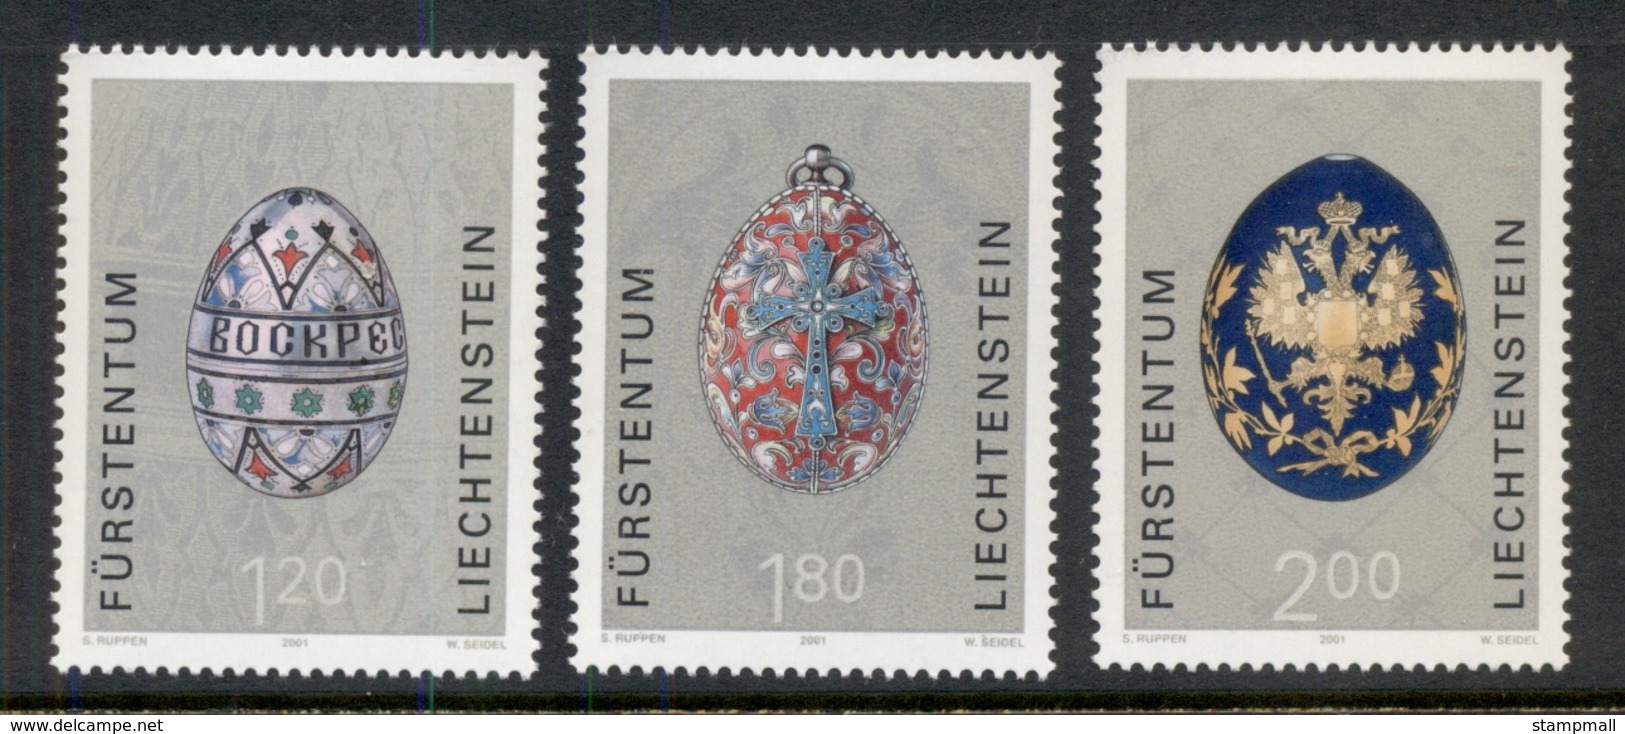 Liechtenstein 2001 Russian Easter Eggs MUH - Unused Stamps